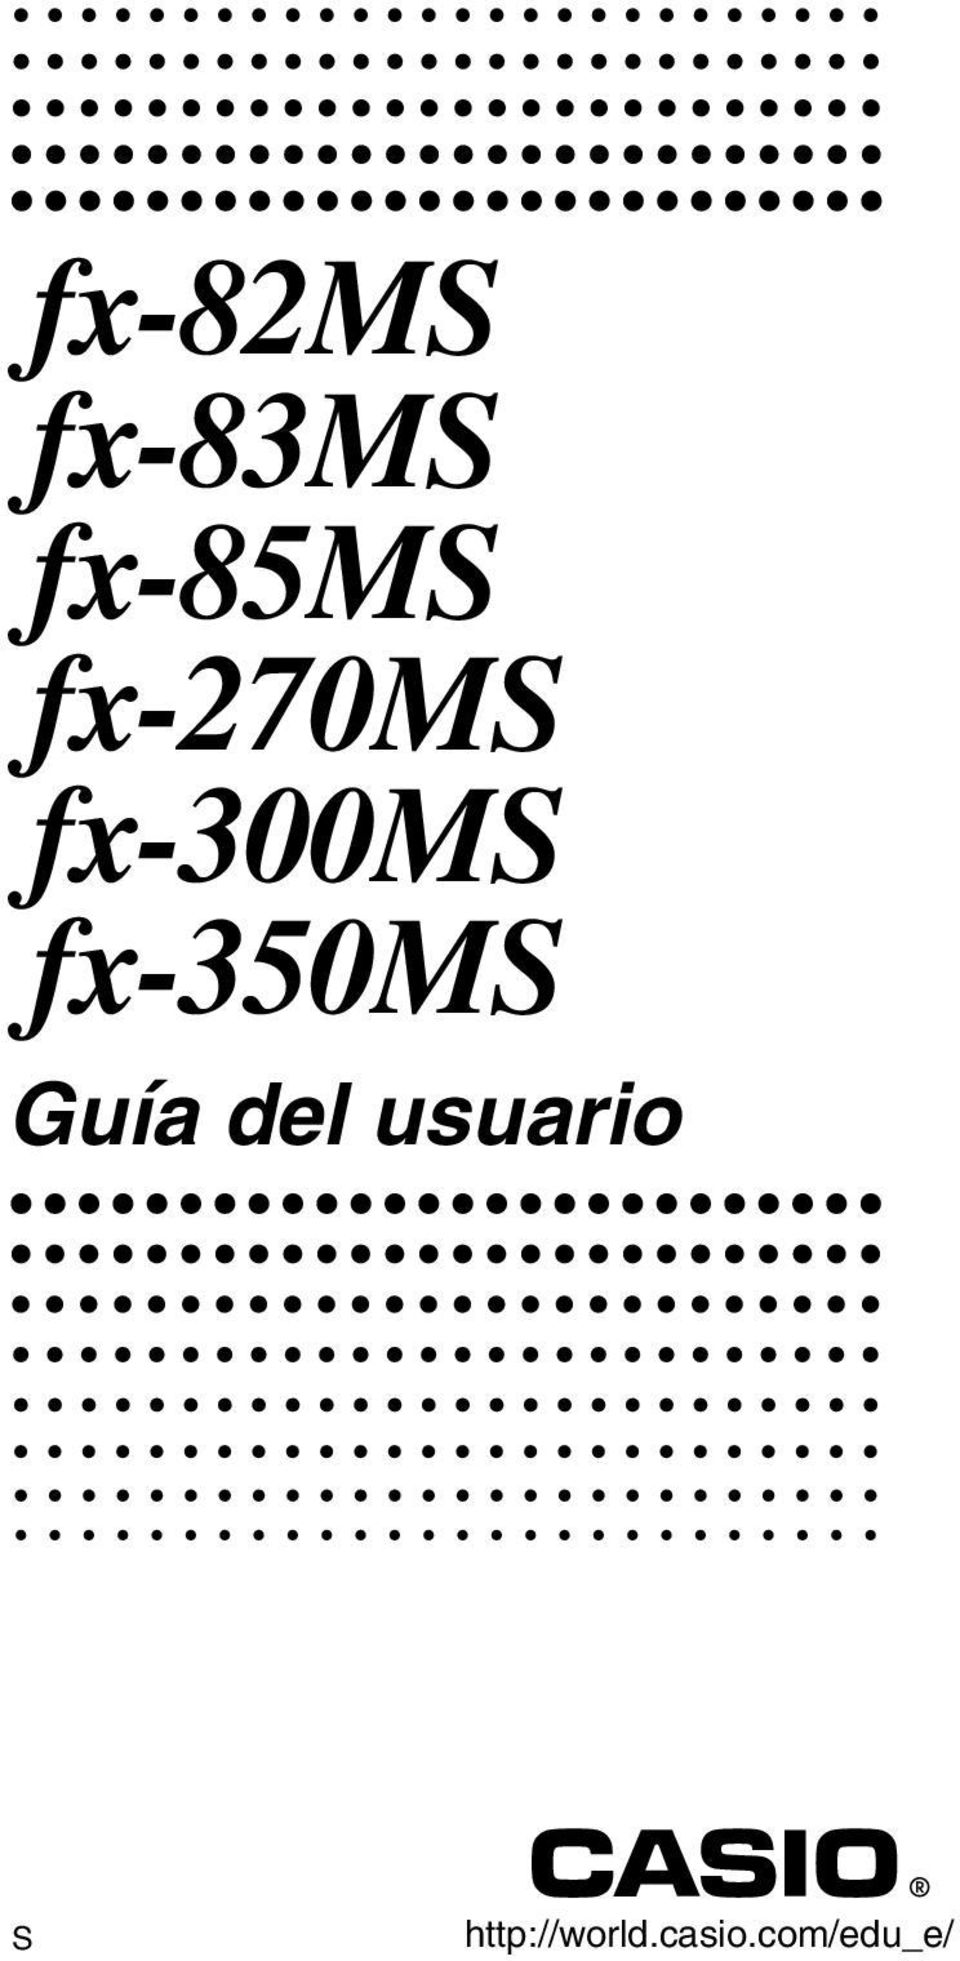 fx-350ms Guía del